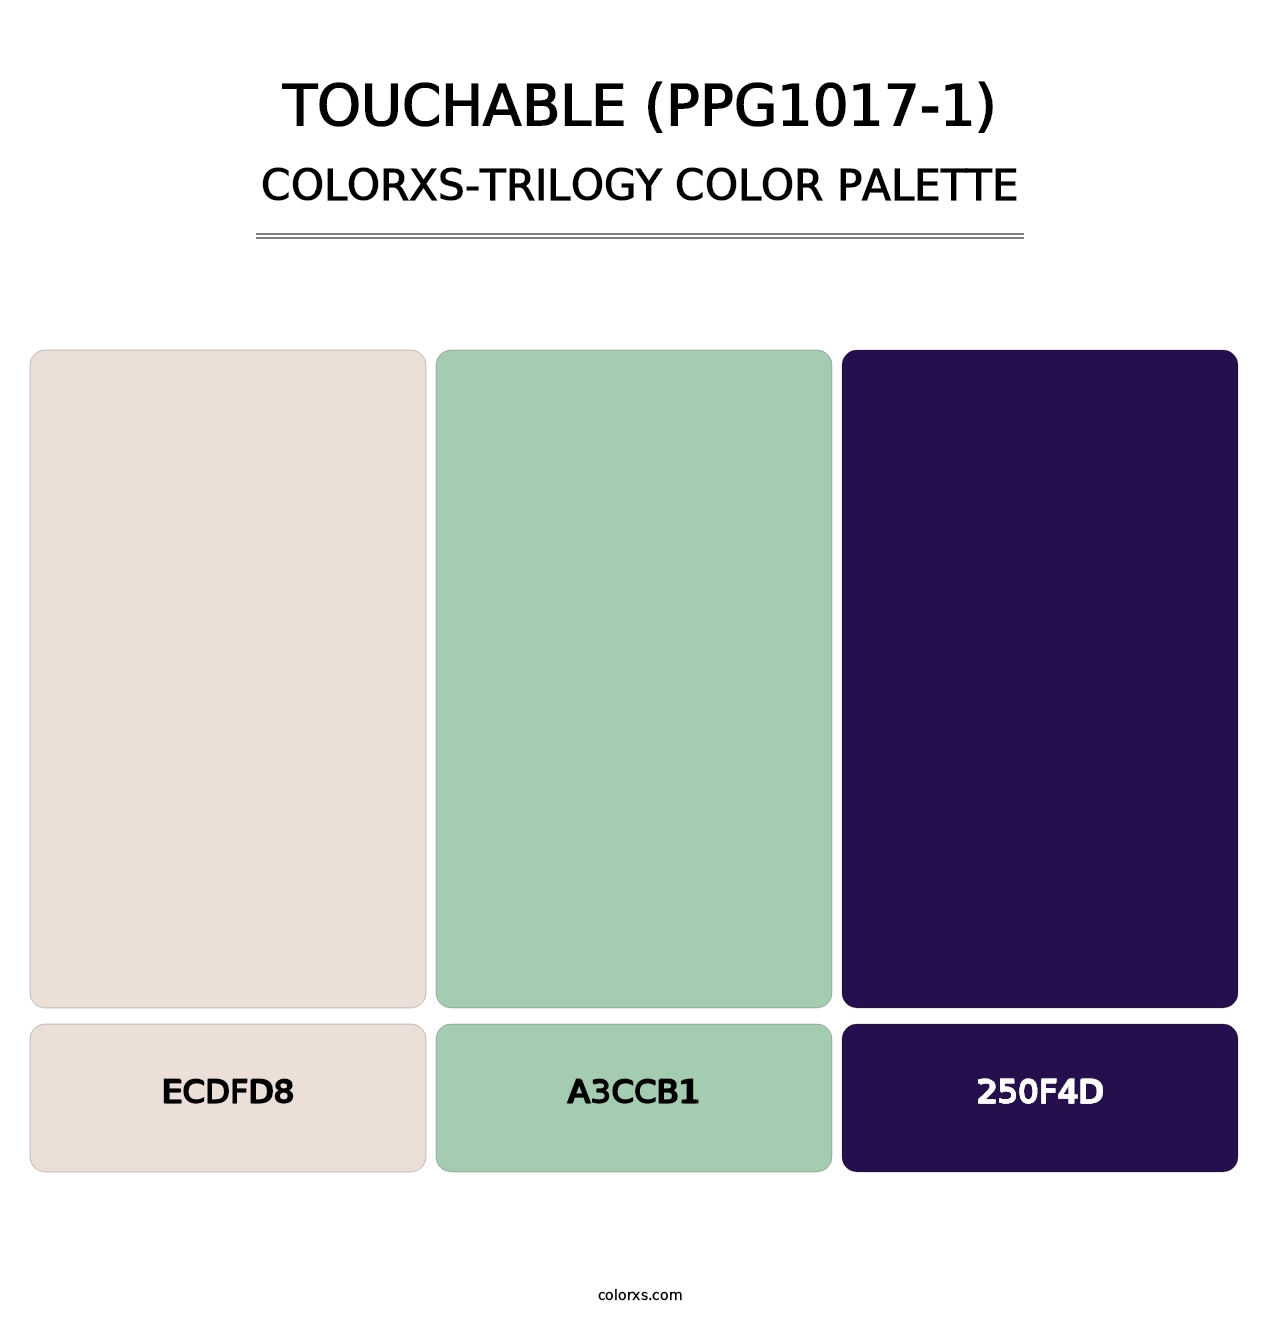 Touchable (PPG1017-1) - Colorxs Trilogy Palette